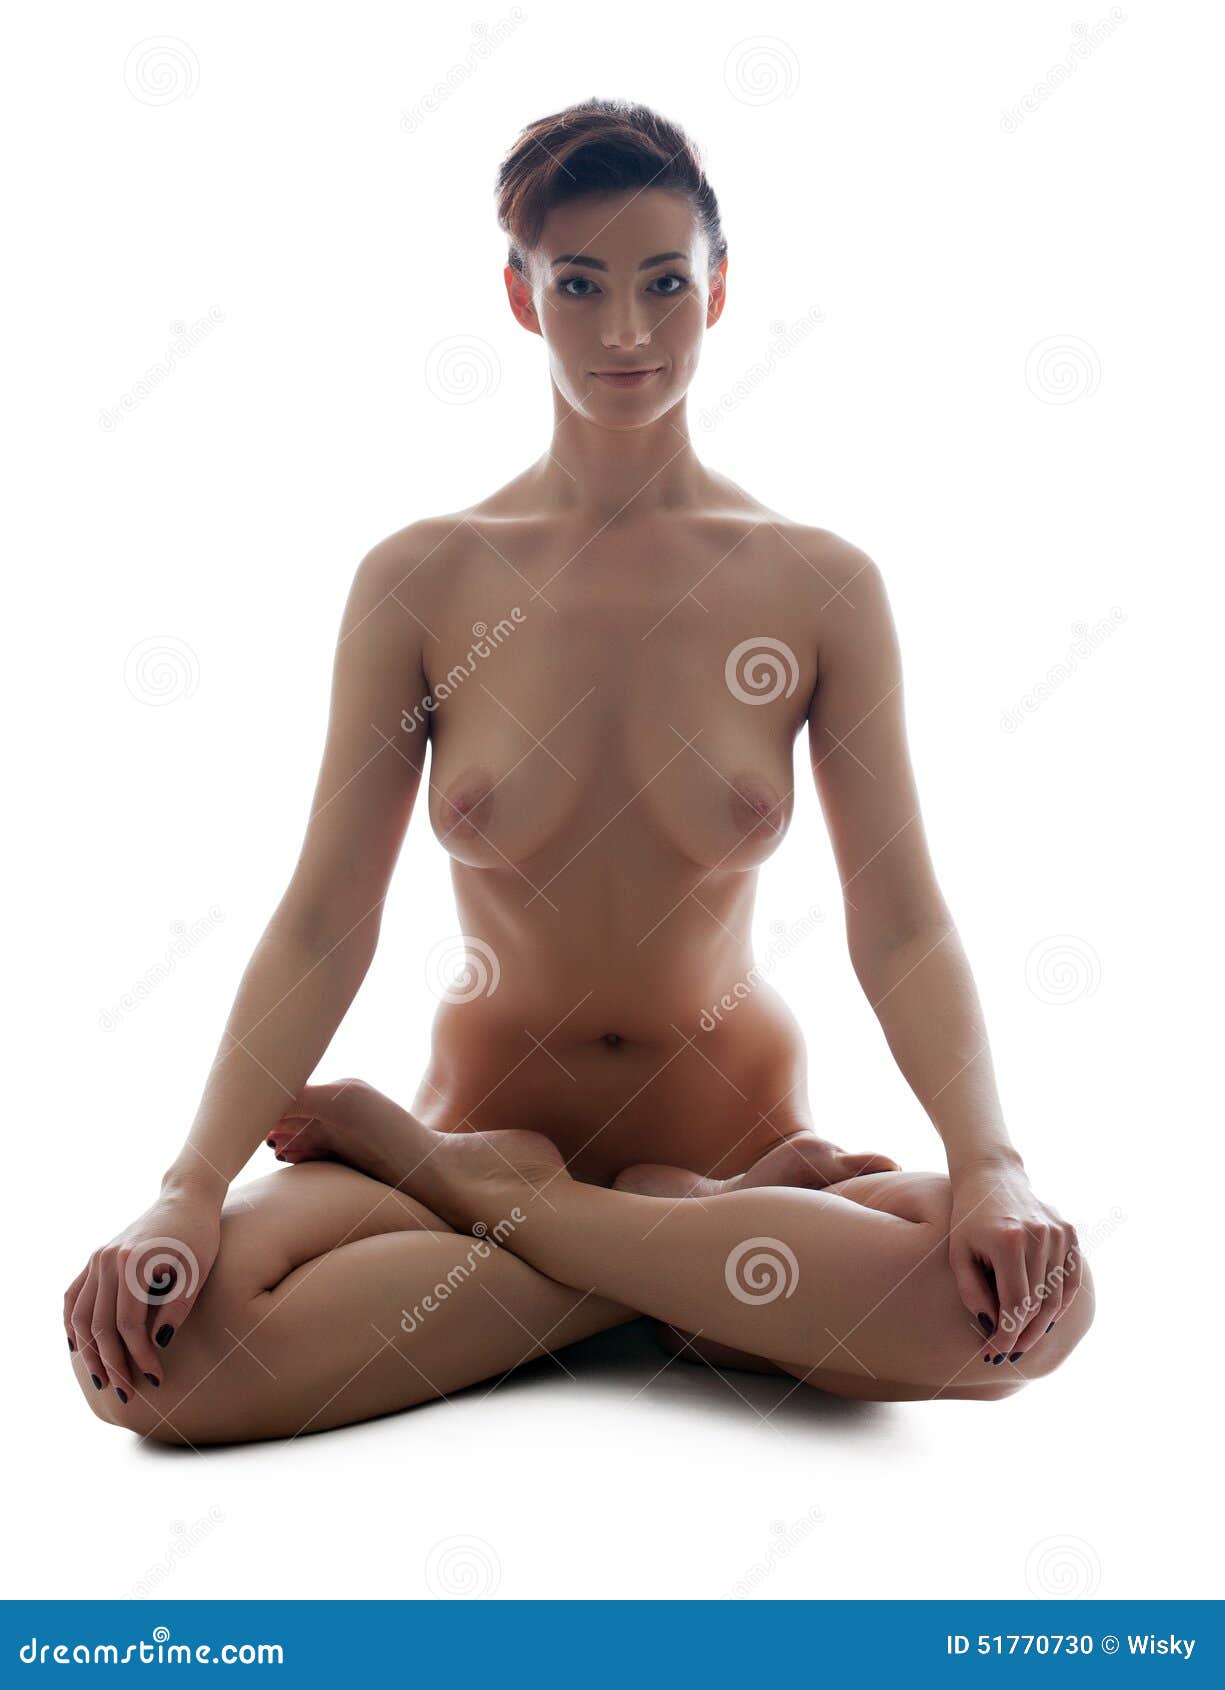 Nude female yoga